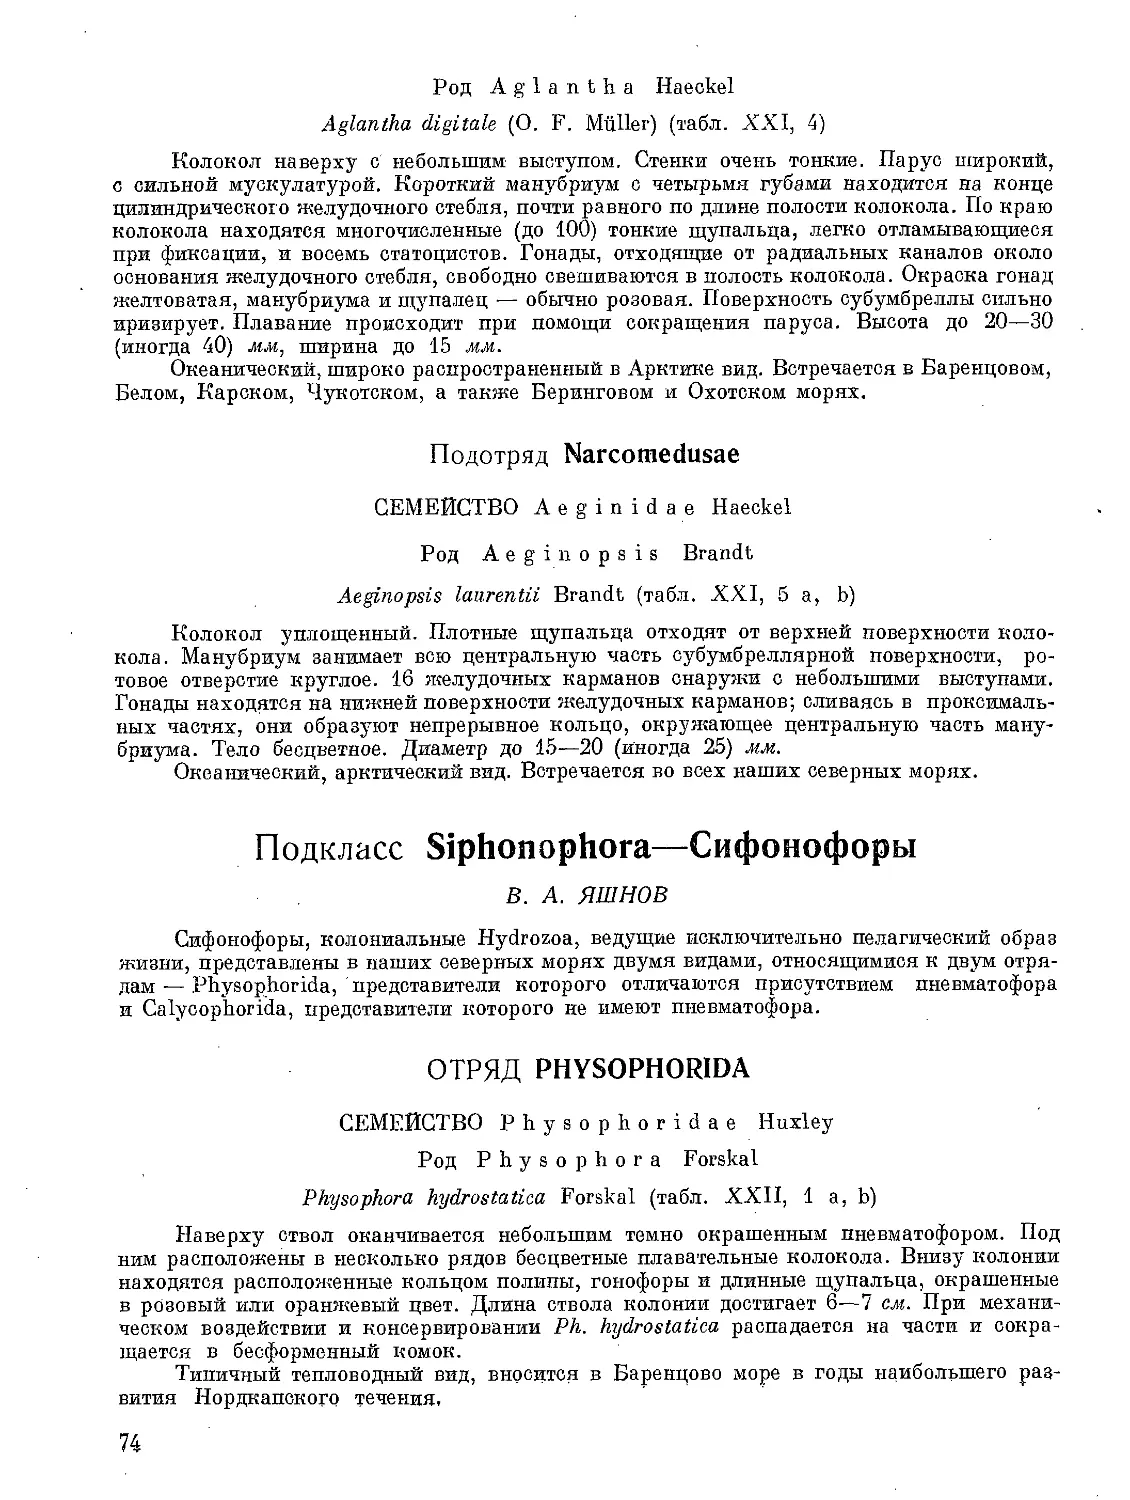 Подкласс Siphonophora— Сифонофоры